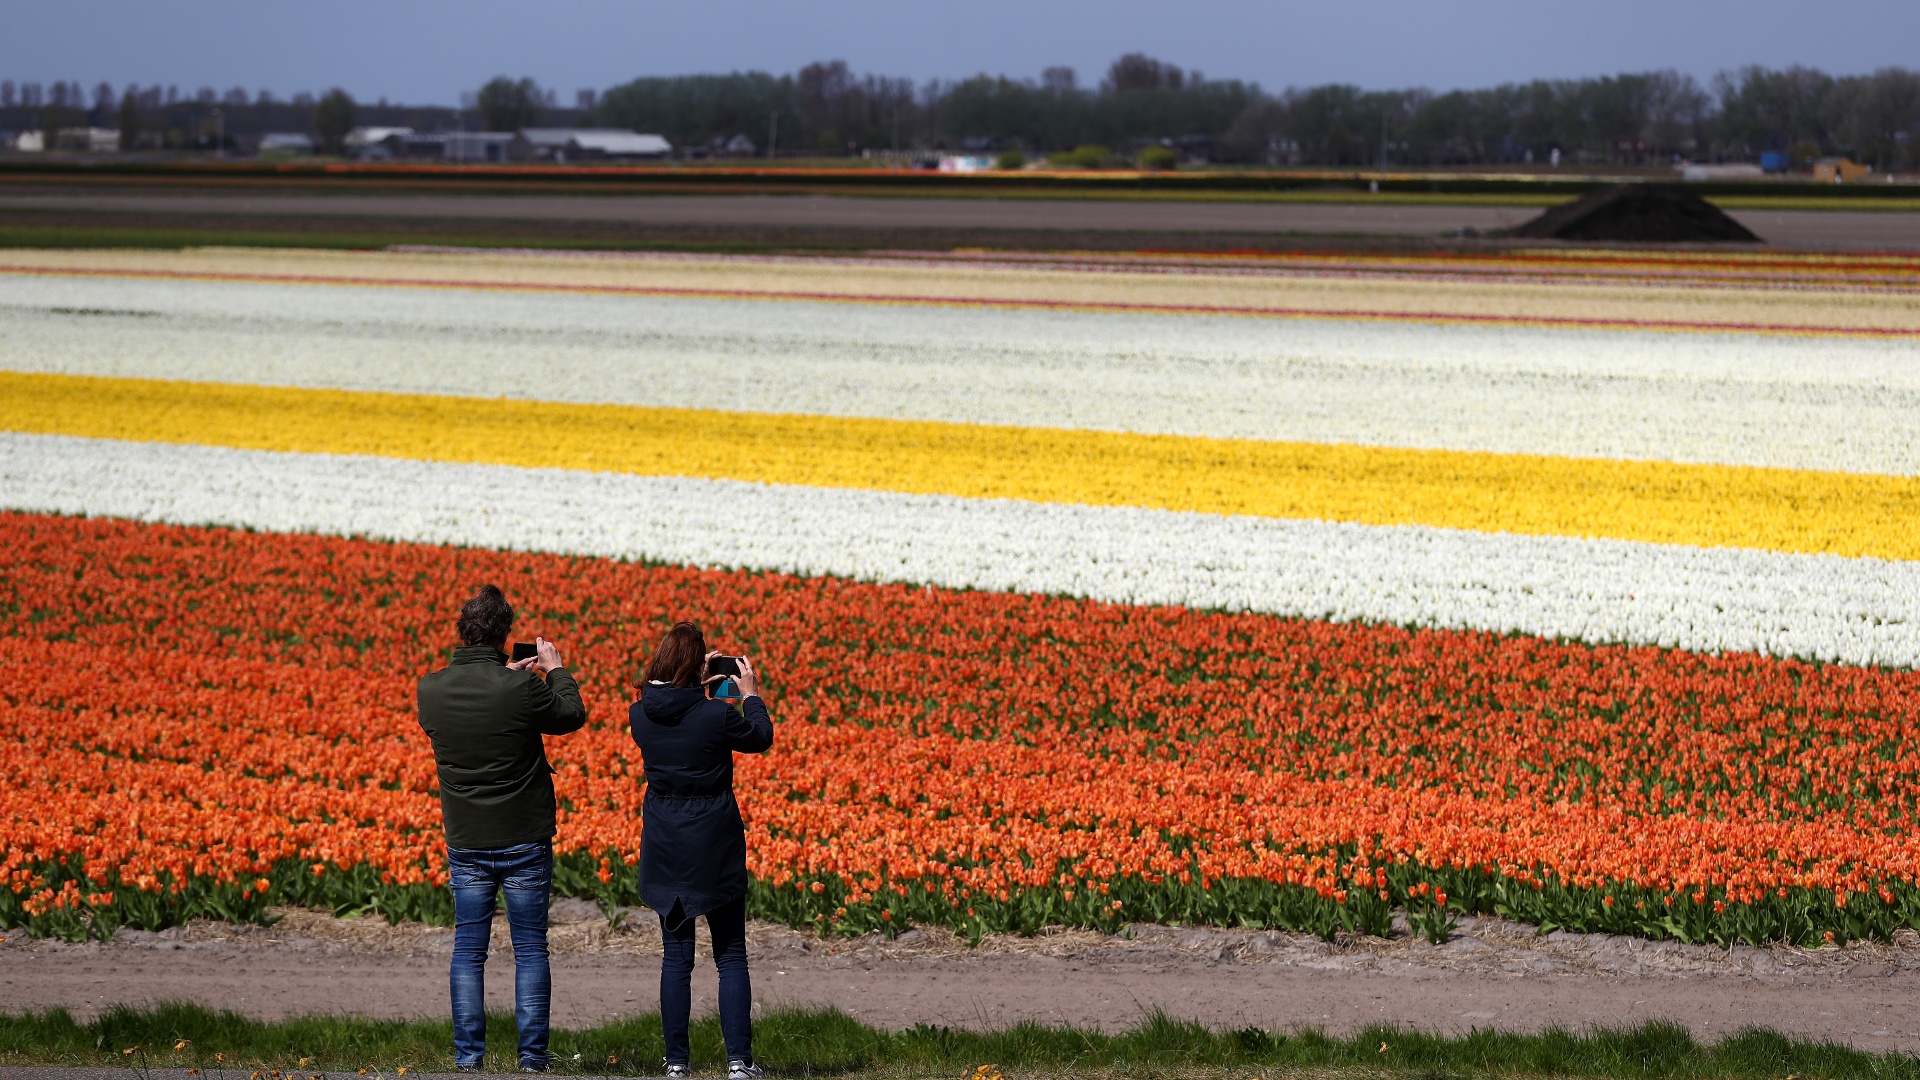 Тюльпаны снова цветут в нидерландском саду «Кёкенхоф»